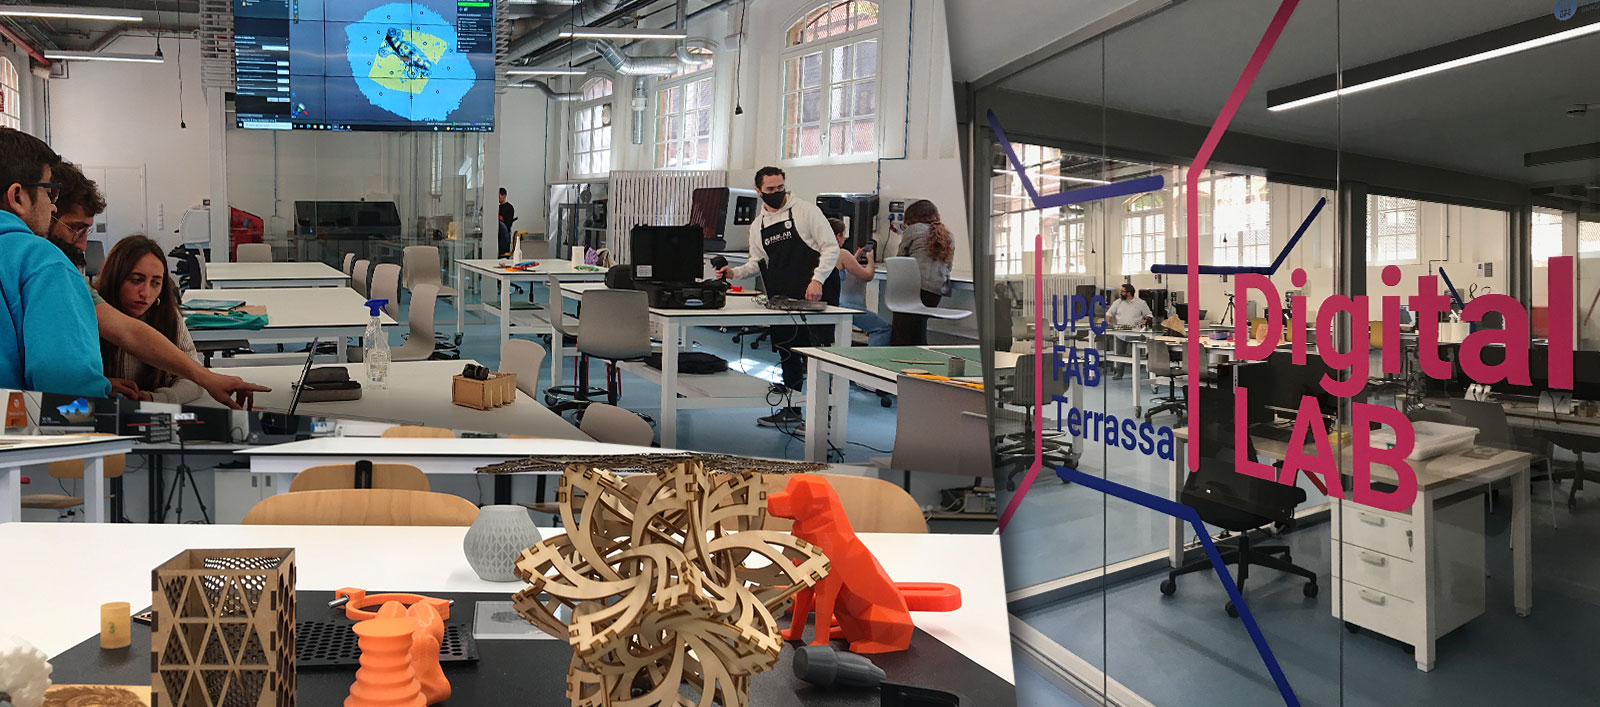 El president de la Generalitat Pere Aragonès mira algunes de les peces fabricades en 3D que li mostren durant la seva visita als laboratoris que conformen la xarxa UPC FAB Terrassa